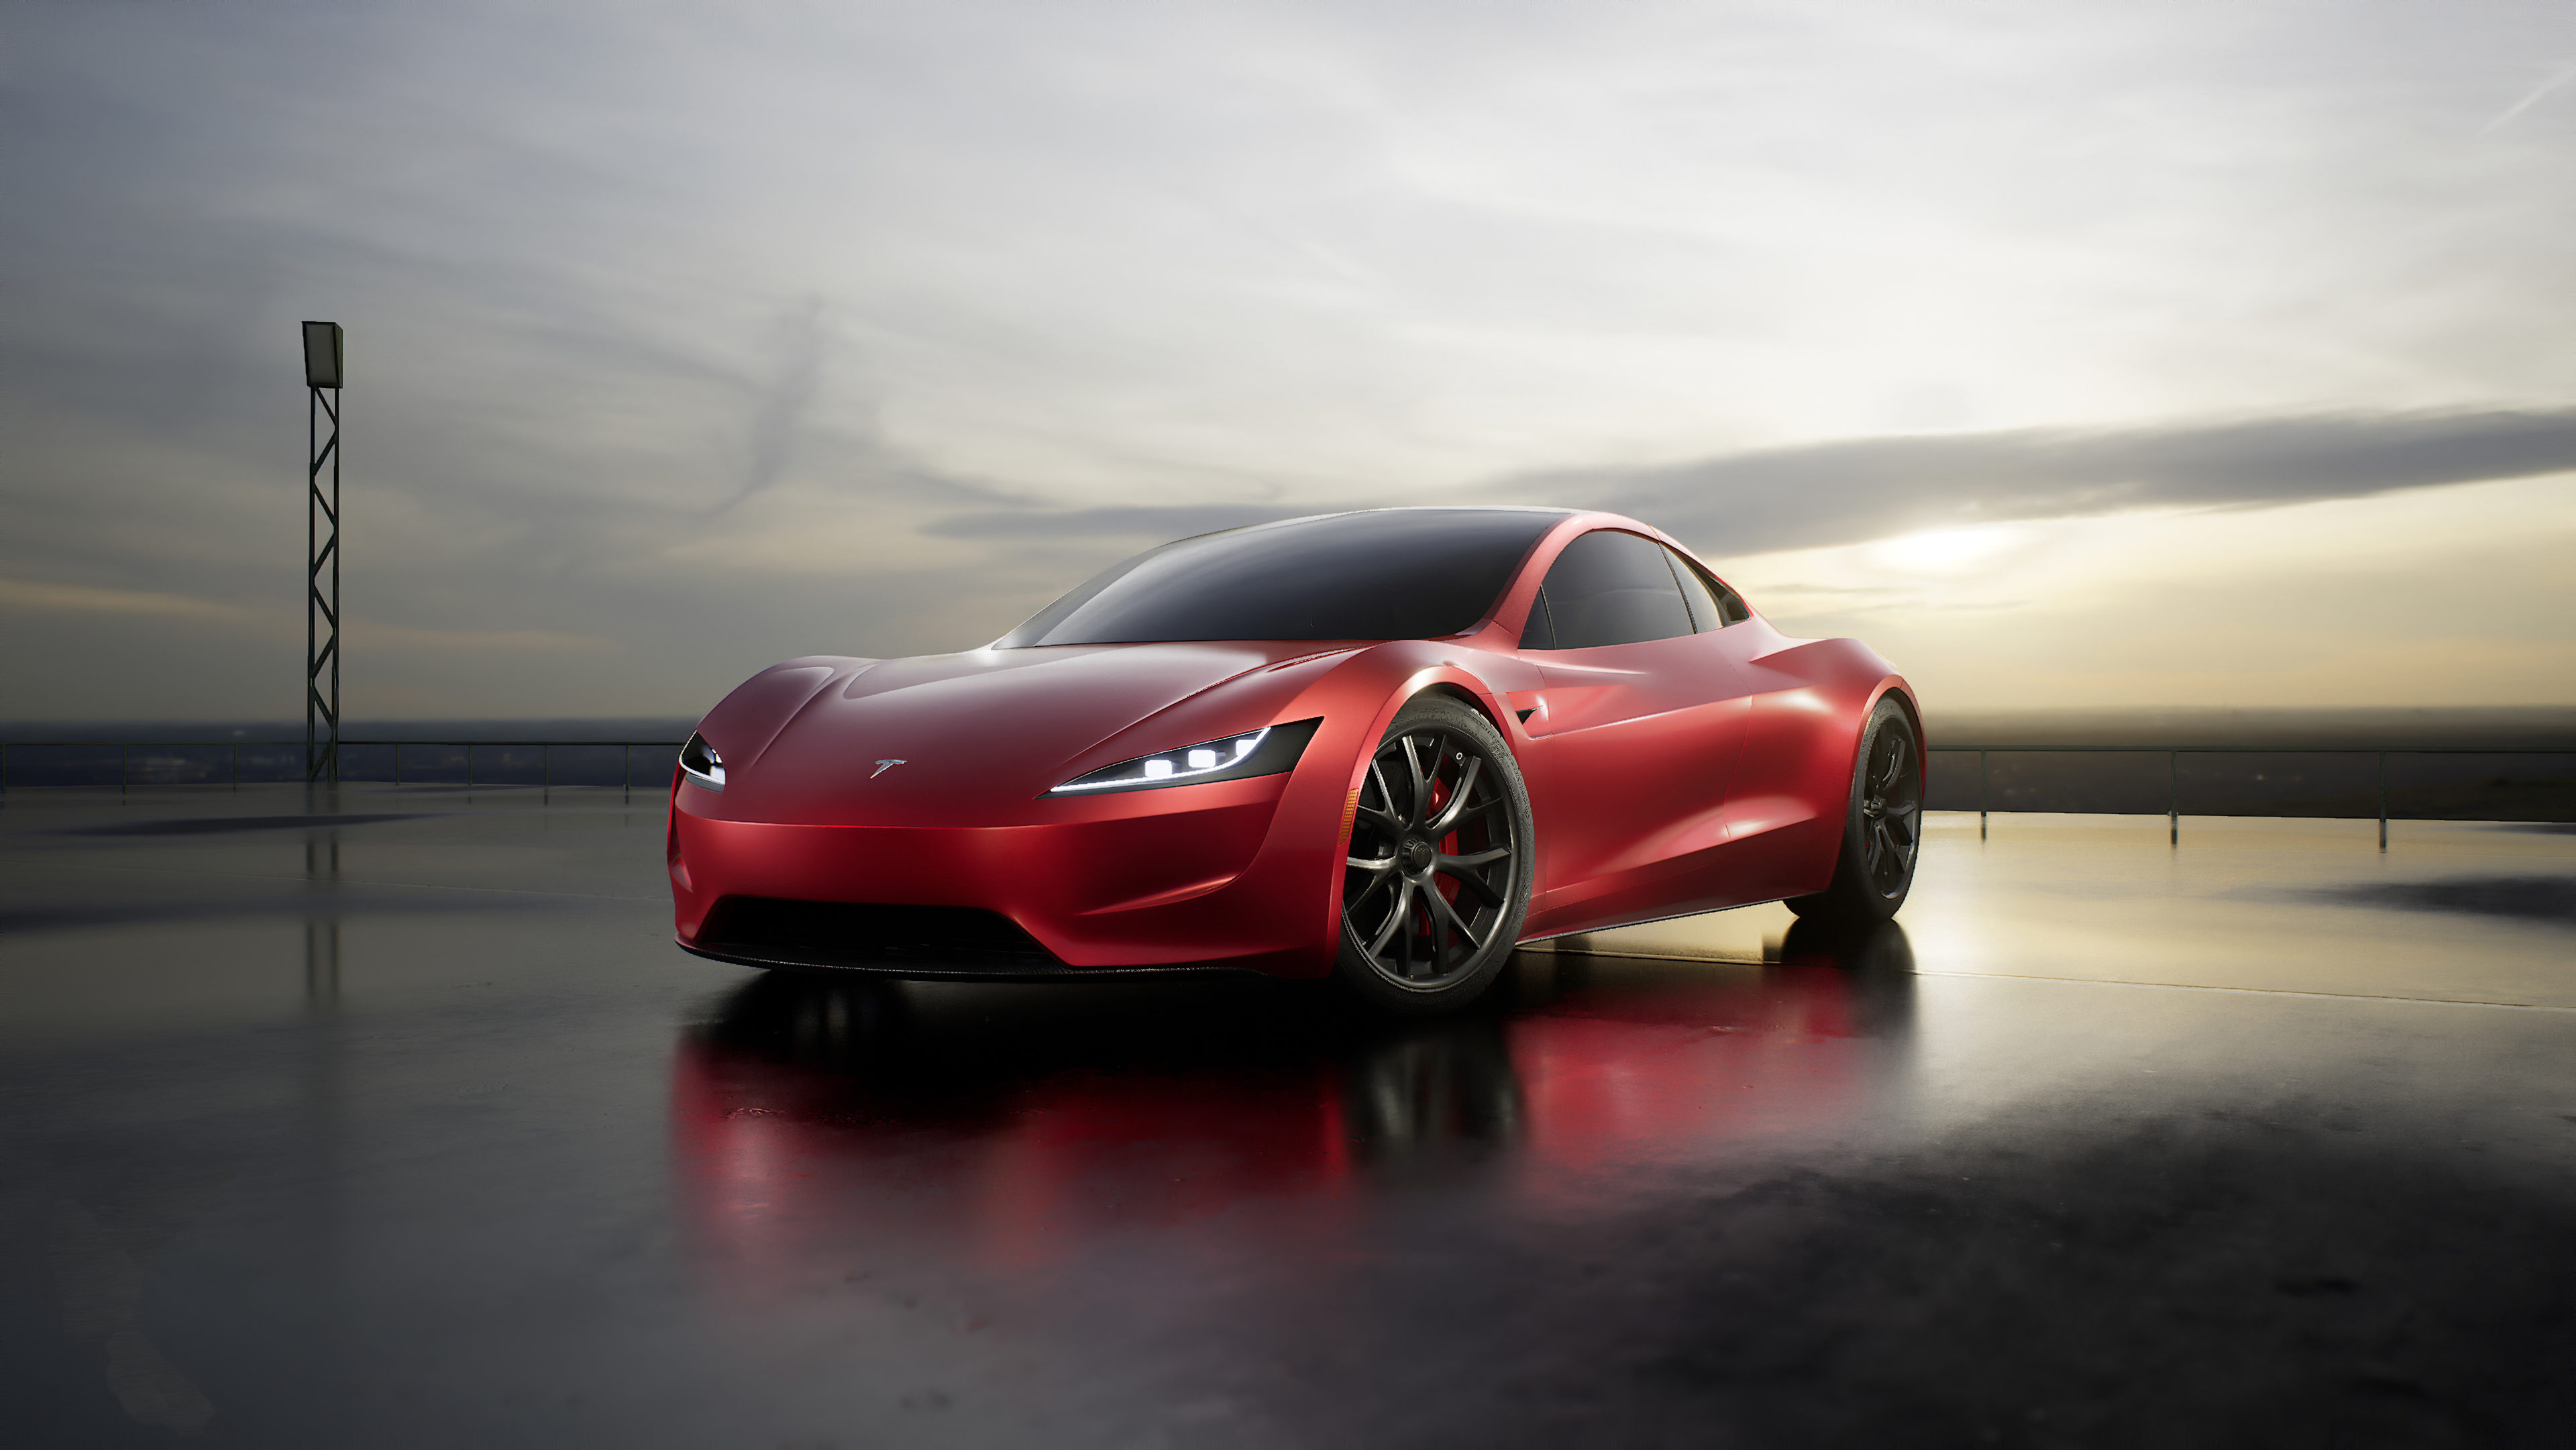 21 Tesla Roadster HD Wallpapers  WallpaperSafari